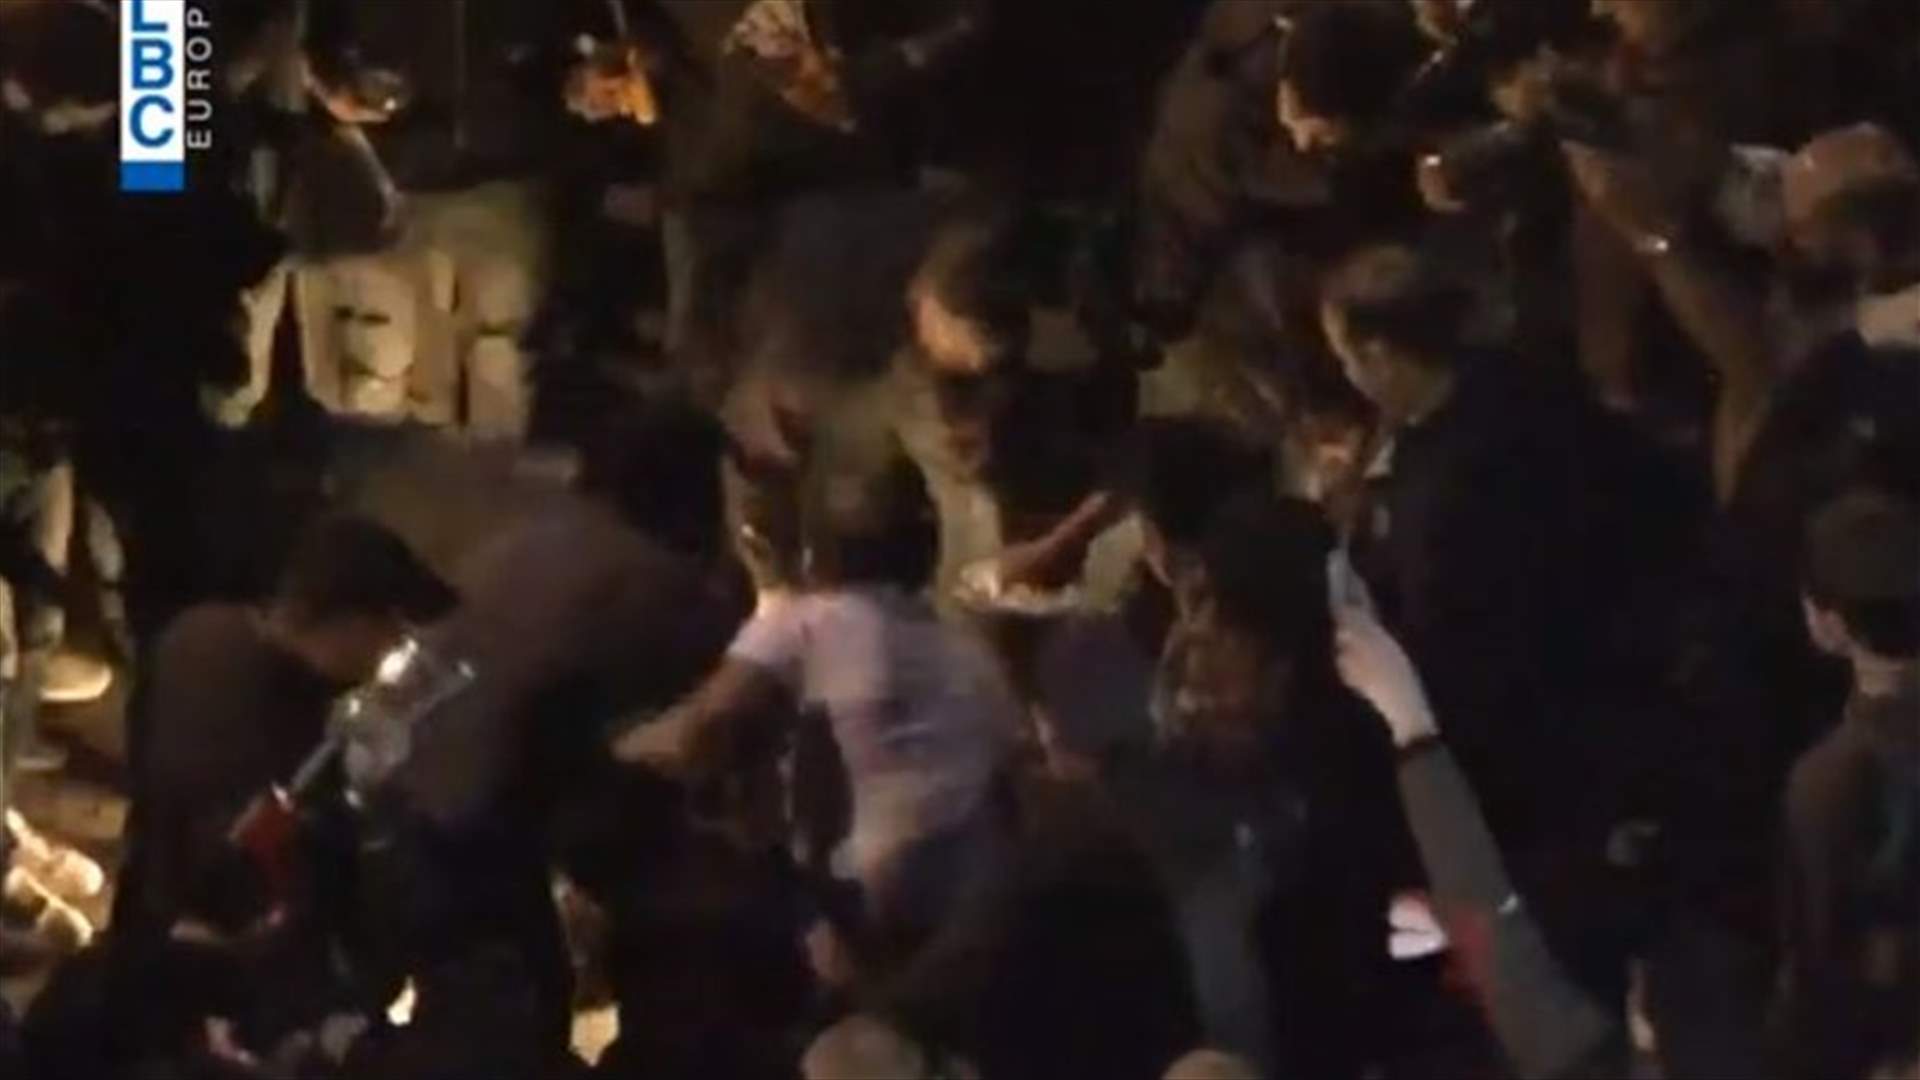 متظاهر يحرق نفسه في ساحة رياض الصلح (فيديو)